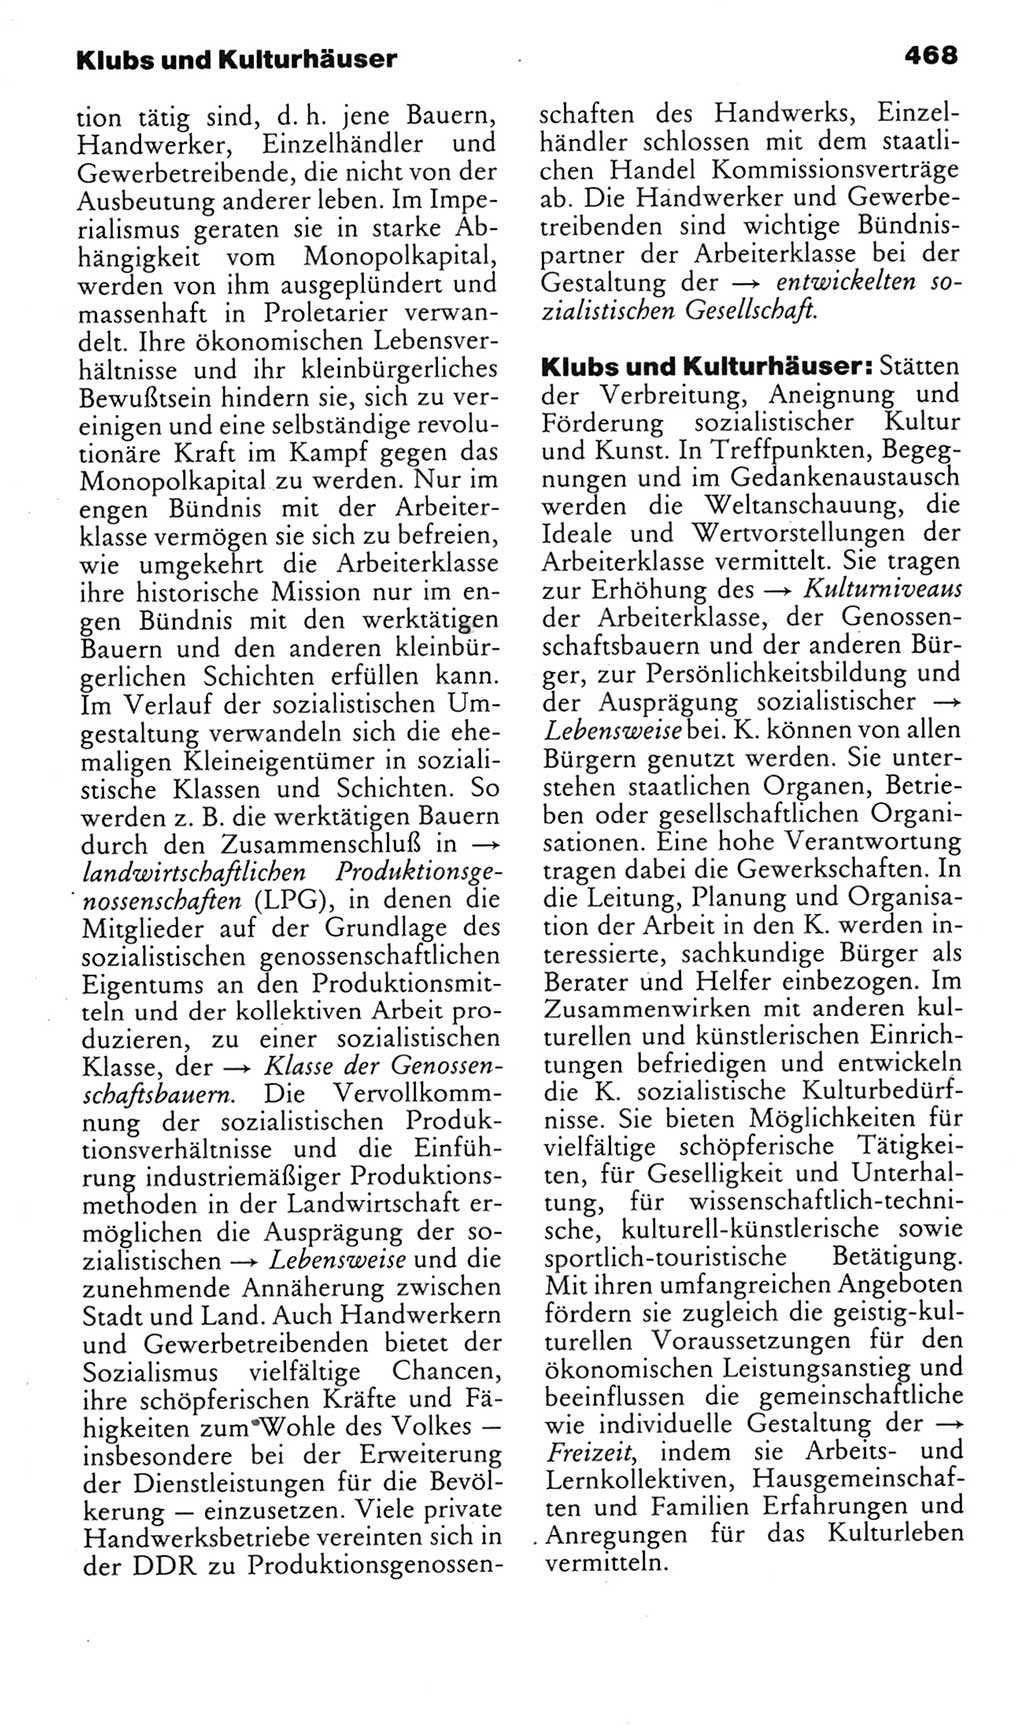 Kleines politisches Wörterbuch [Deutsche Demokratische Republik (DDR)] 1985, Seite 468 (Kl. pol. Wb. DDR 1985, S. 468)